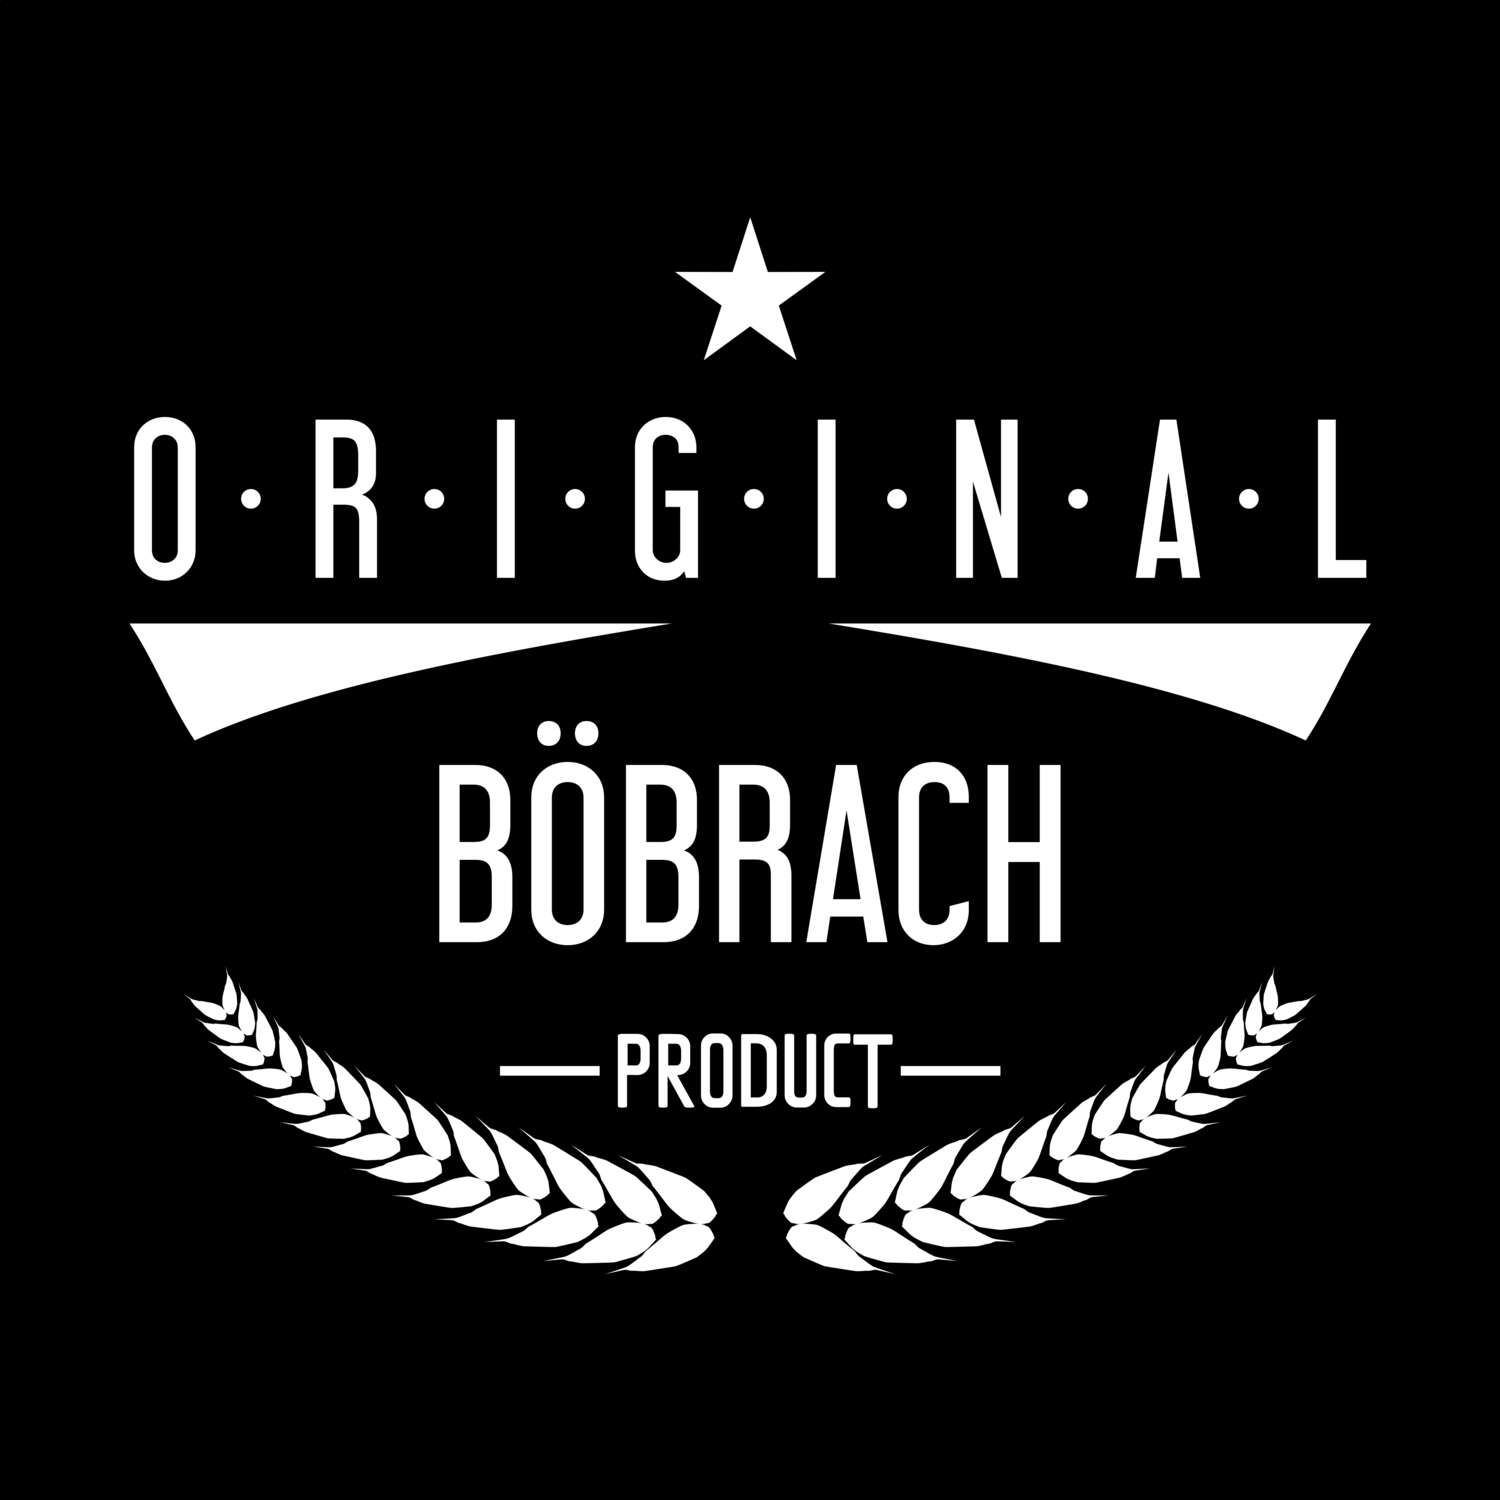 Böbrach T-Shirt »Original Product«